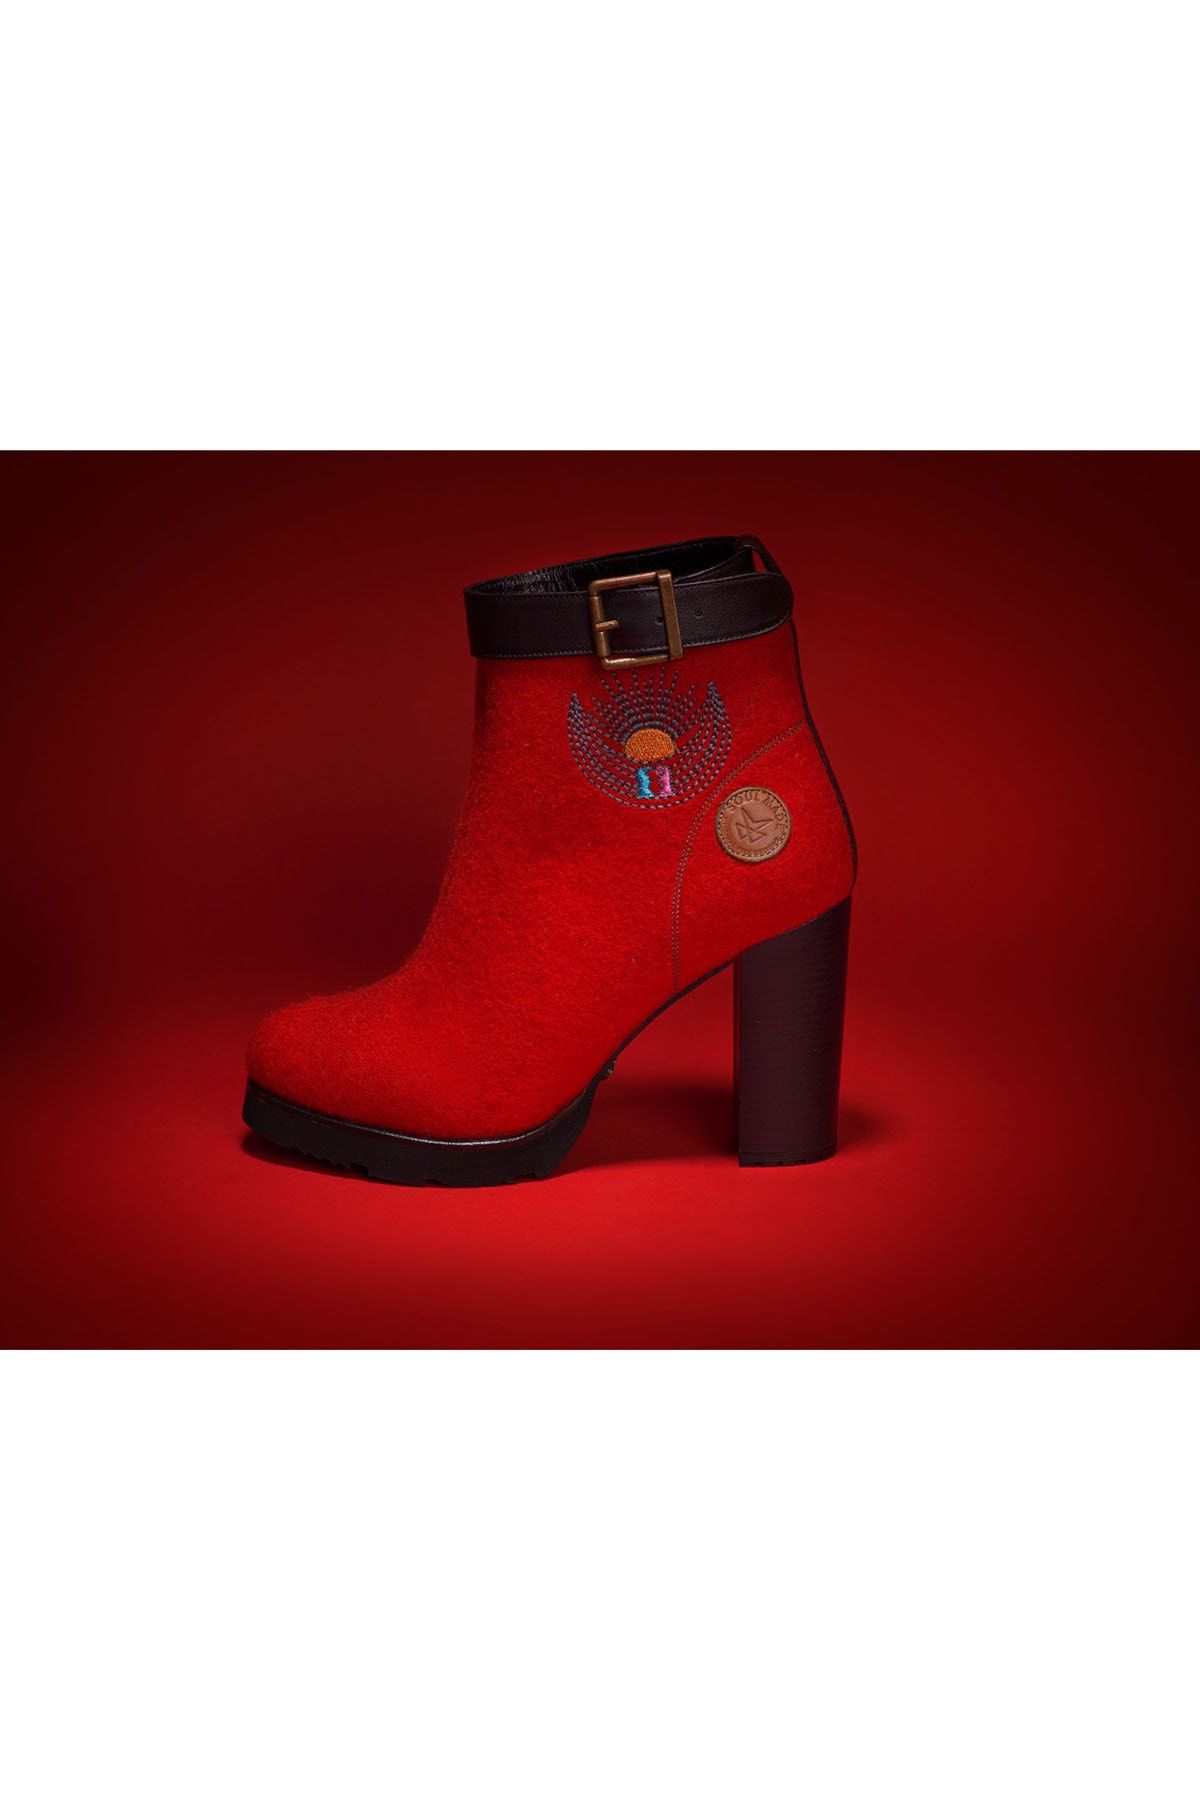 Soul Made -dora -kırmızı -tasarım Kadın Topuklu Bot